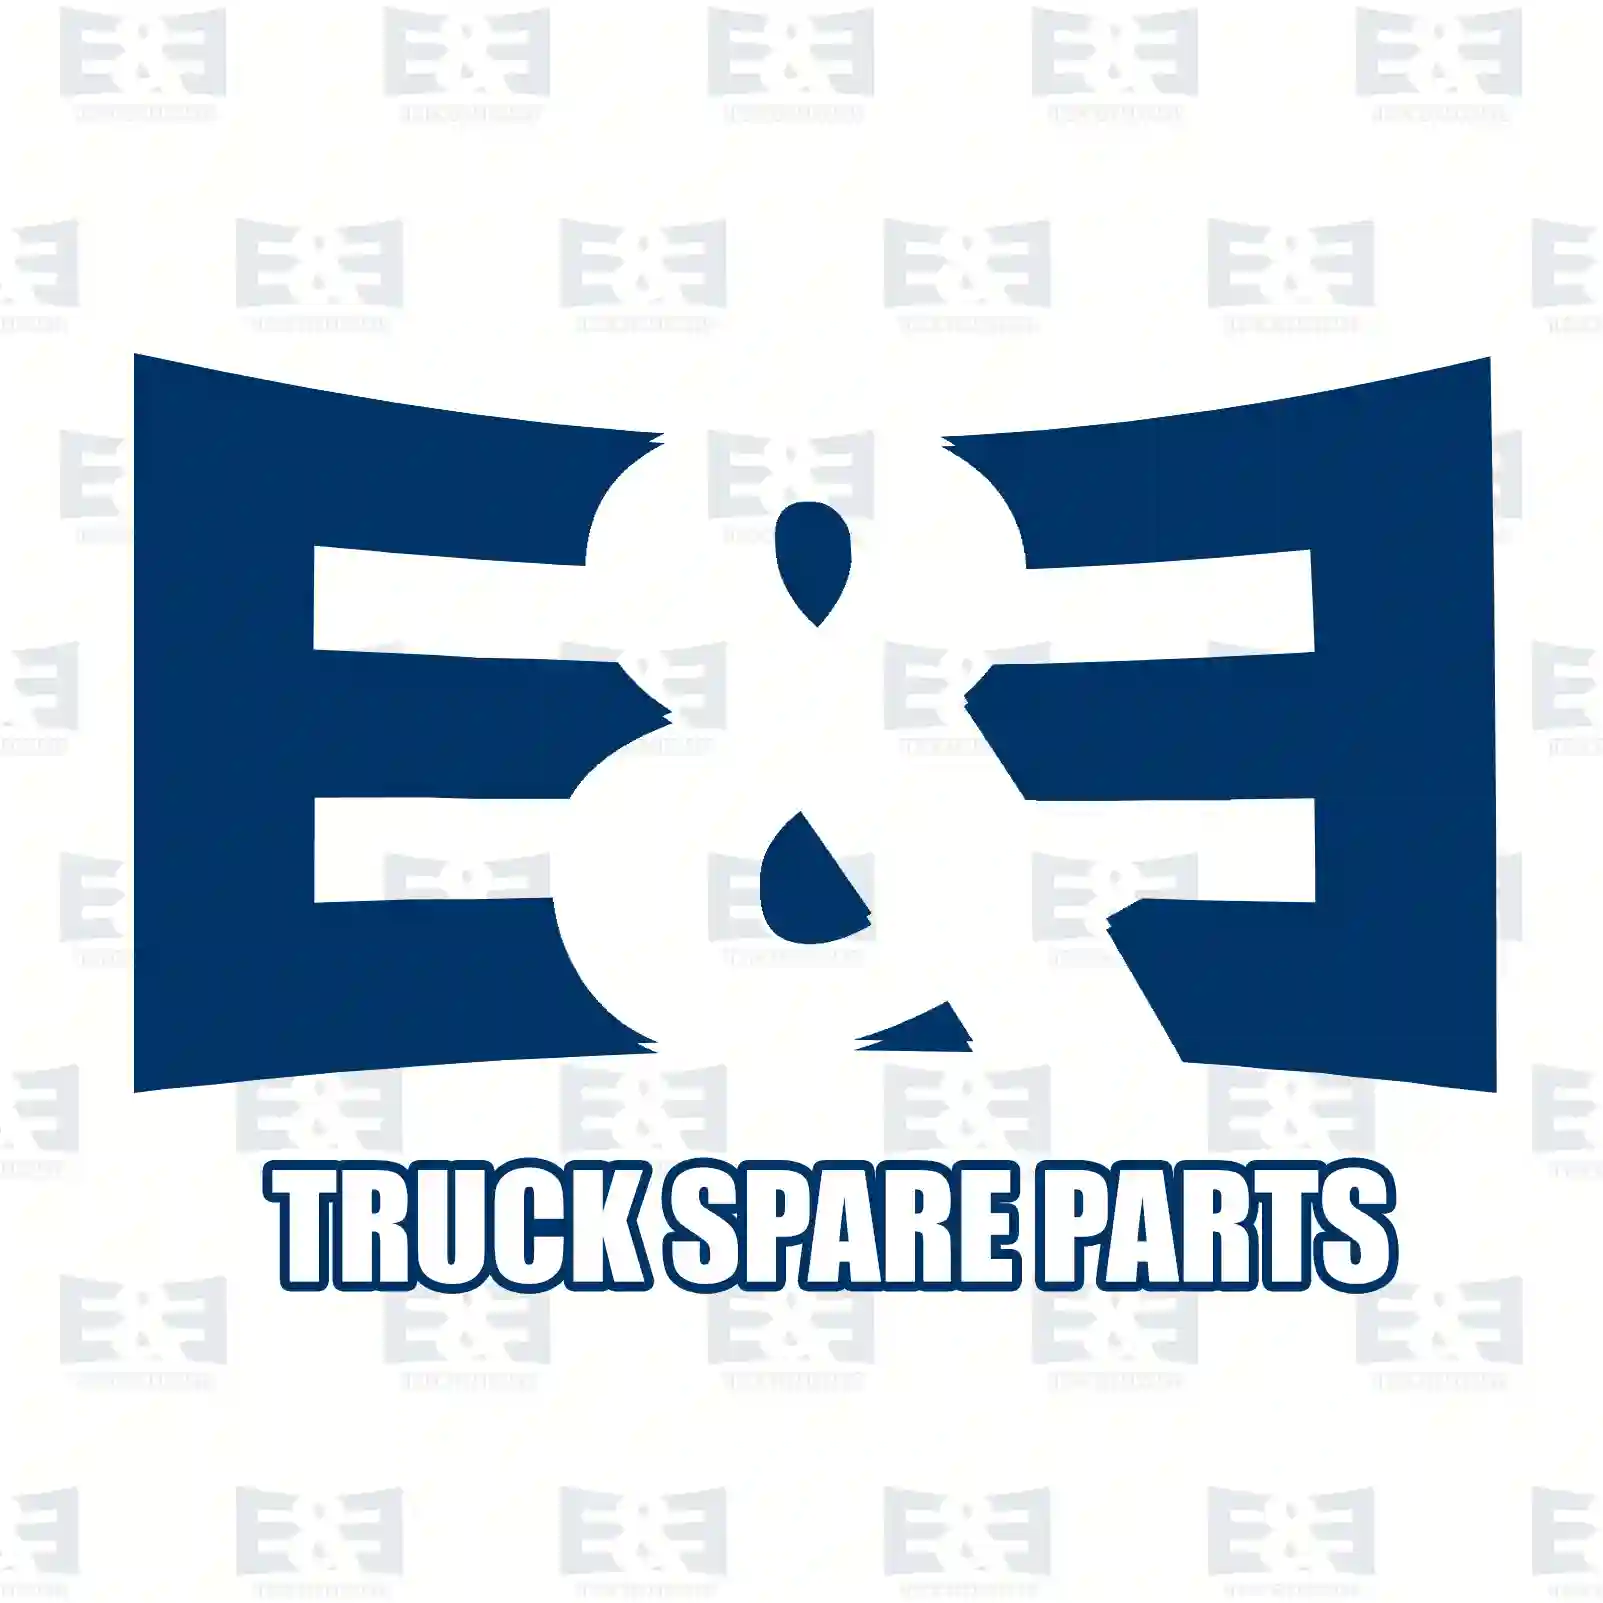 Step well case, right, 2E2292980, 20529640, 3175407, ZG61214-0008 ||  2E2292980 E&E Truck Spare Parts | Truck Spare Parts, Auotomotive Spare Parts Step well case, right, 2E2292980, 20529640, 3175407, ZG61214-0008 ||  2E2292980 E&E Truck Spare Parts | Truck Spare Parts, Auotomotive Spare Parts